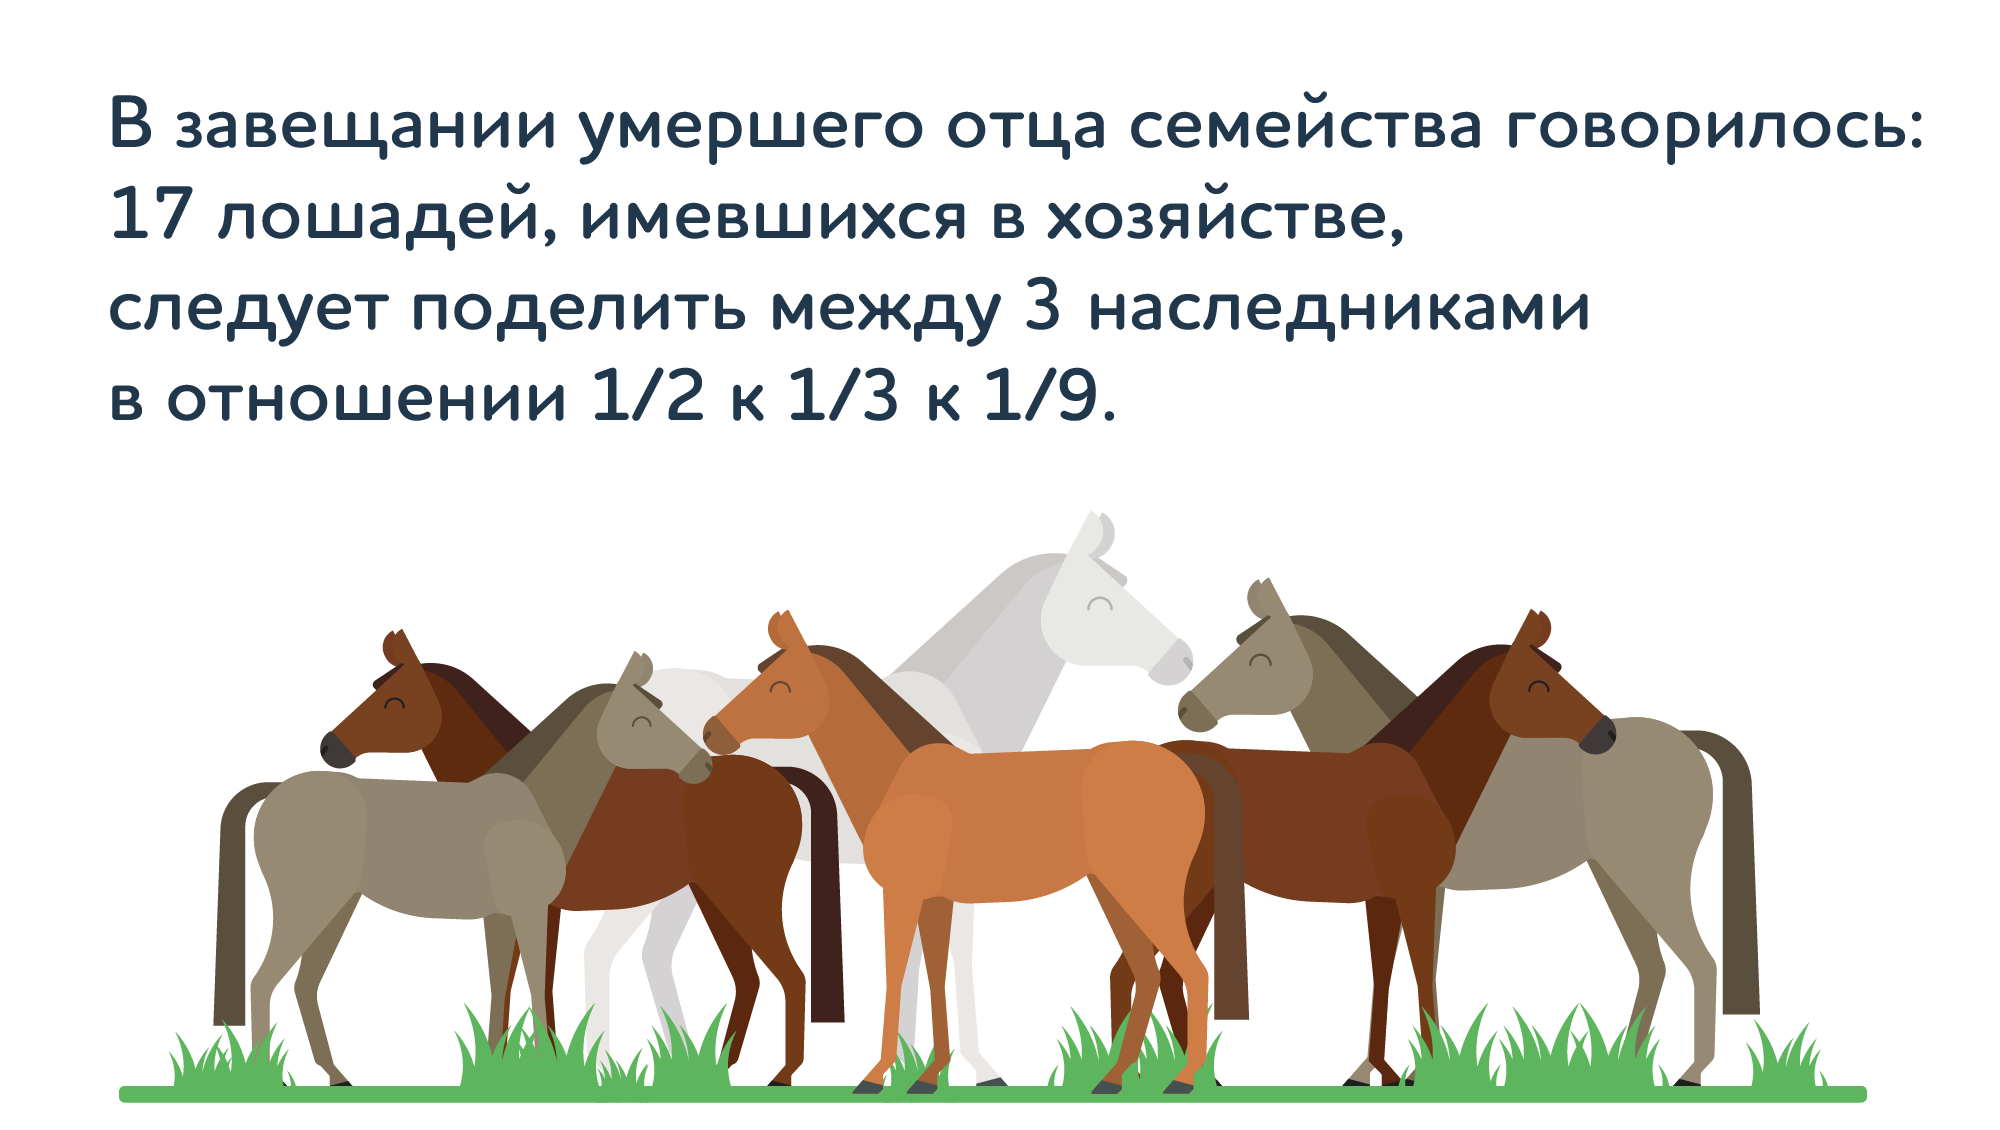 лошади на лугу — схематическая иллюстрация к задаче Тартальи Трудное наследство